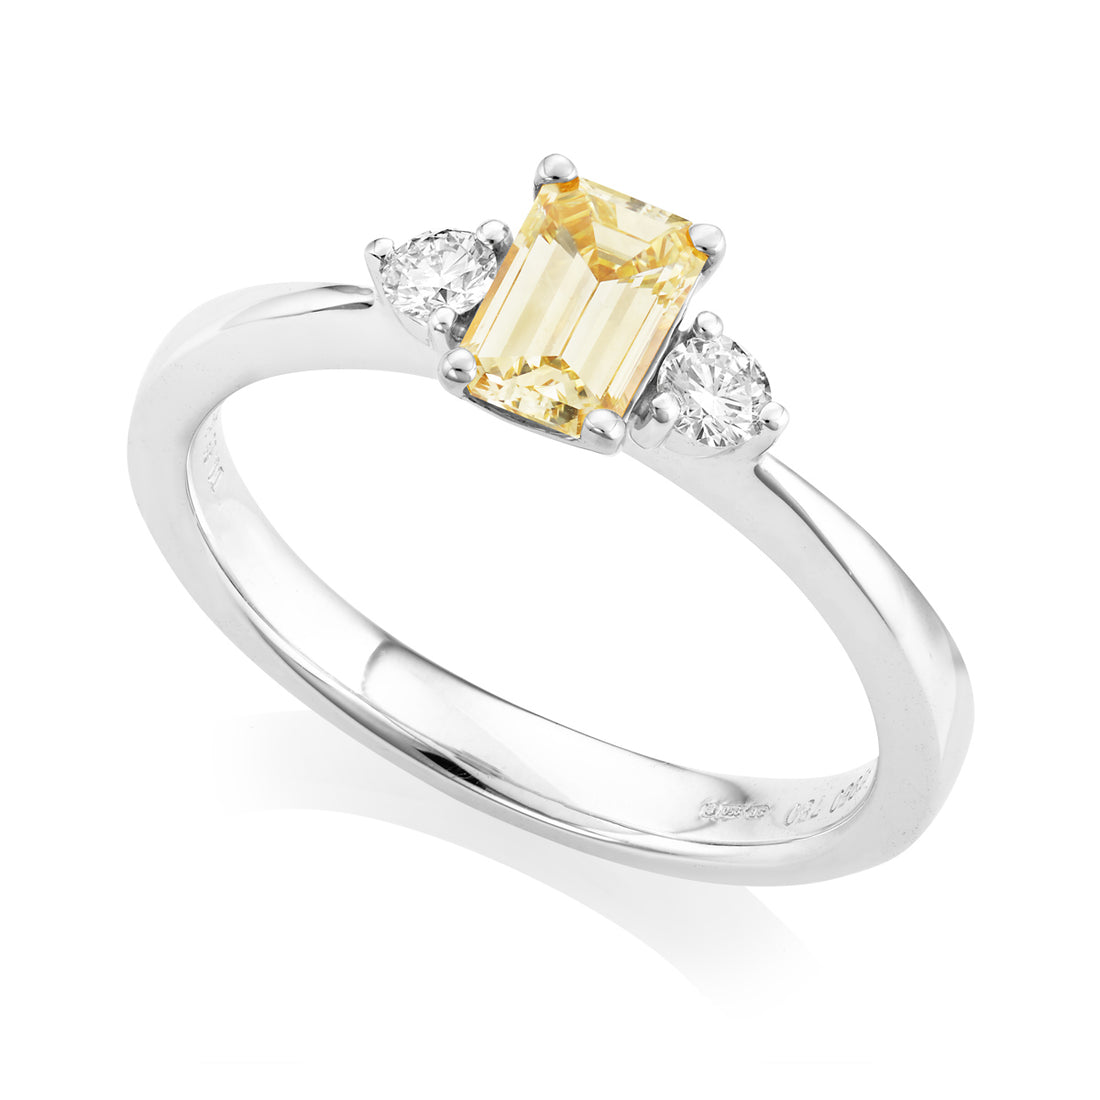 Yellow Diamond and Diamond Ring